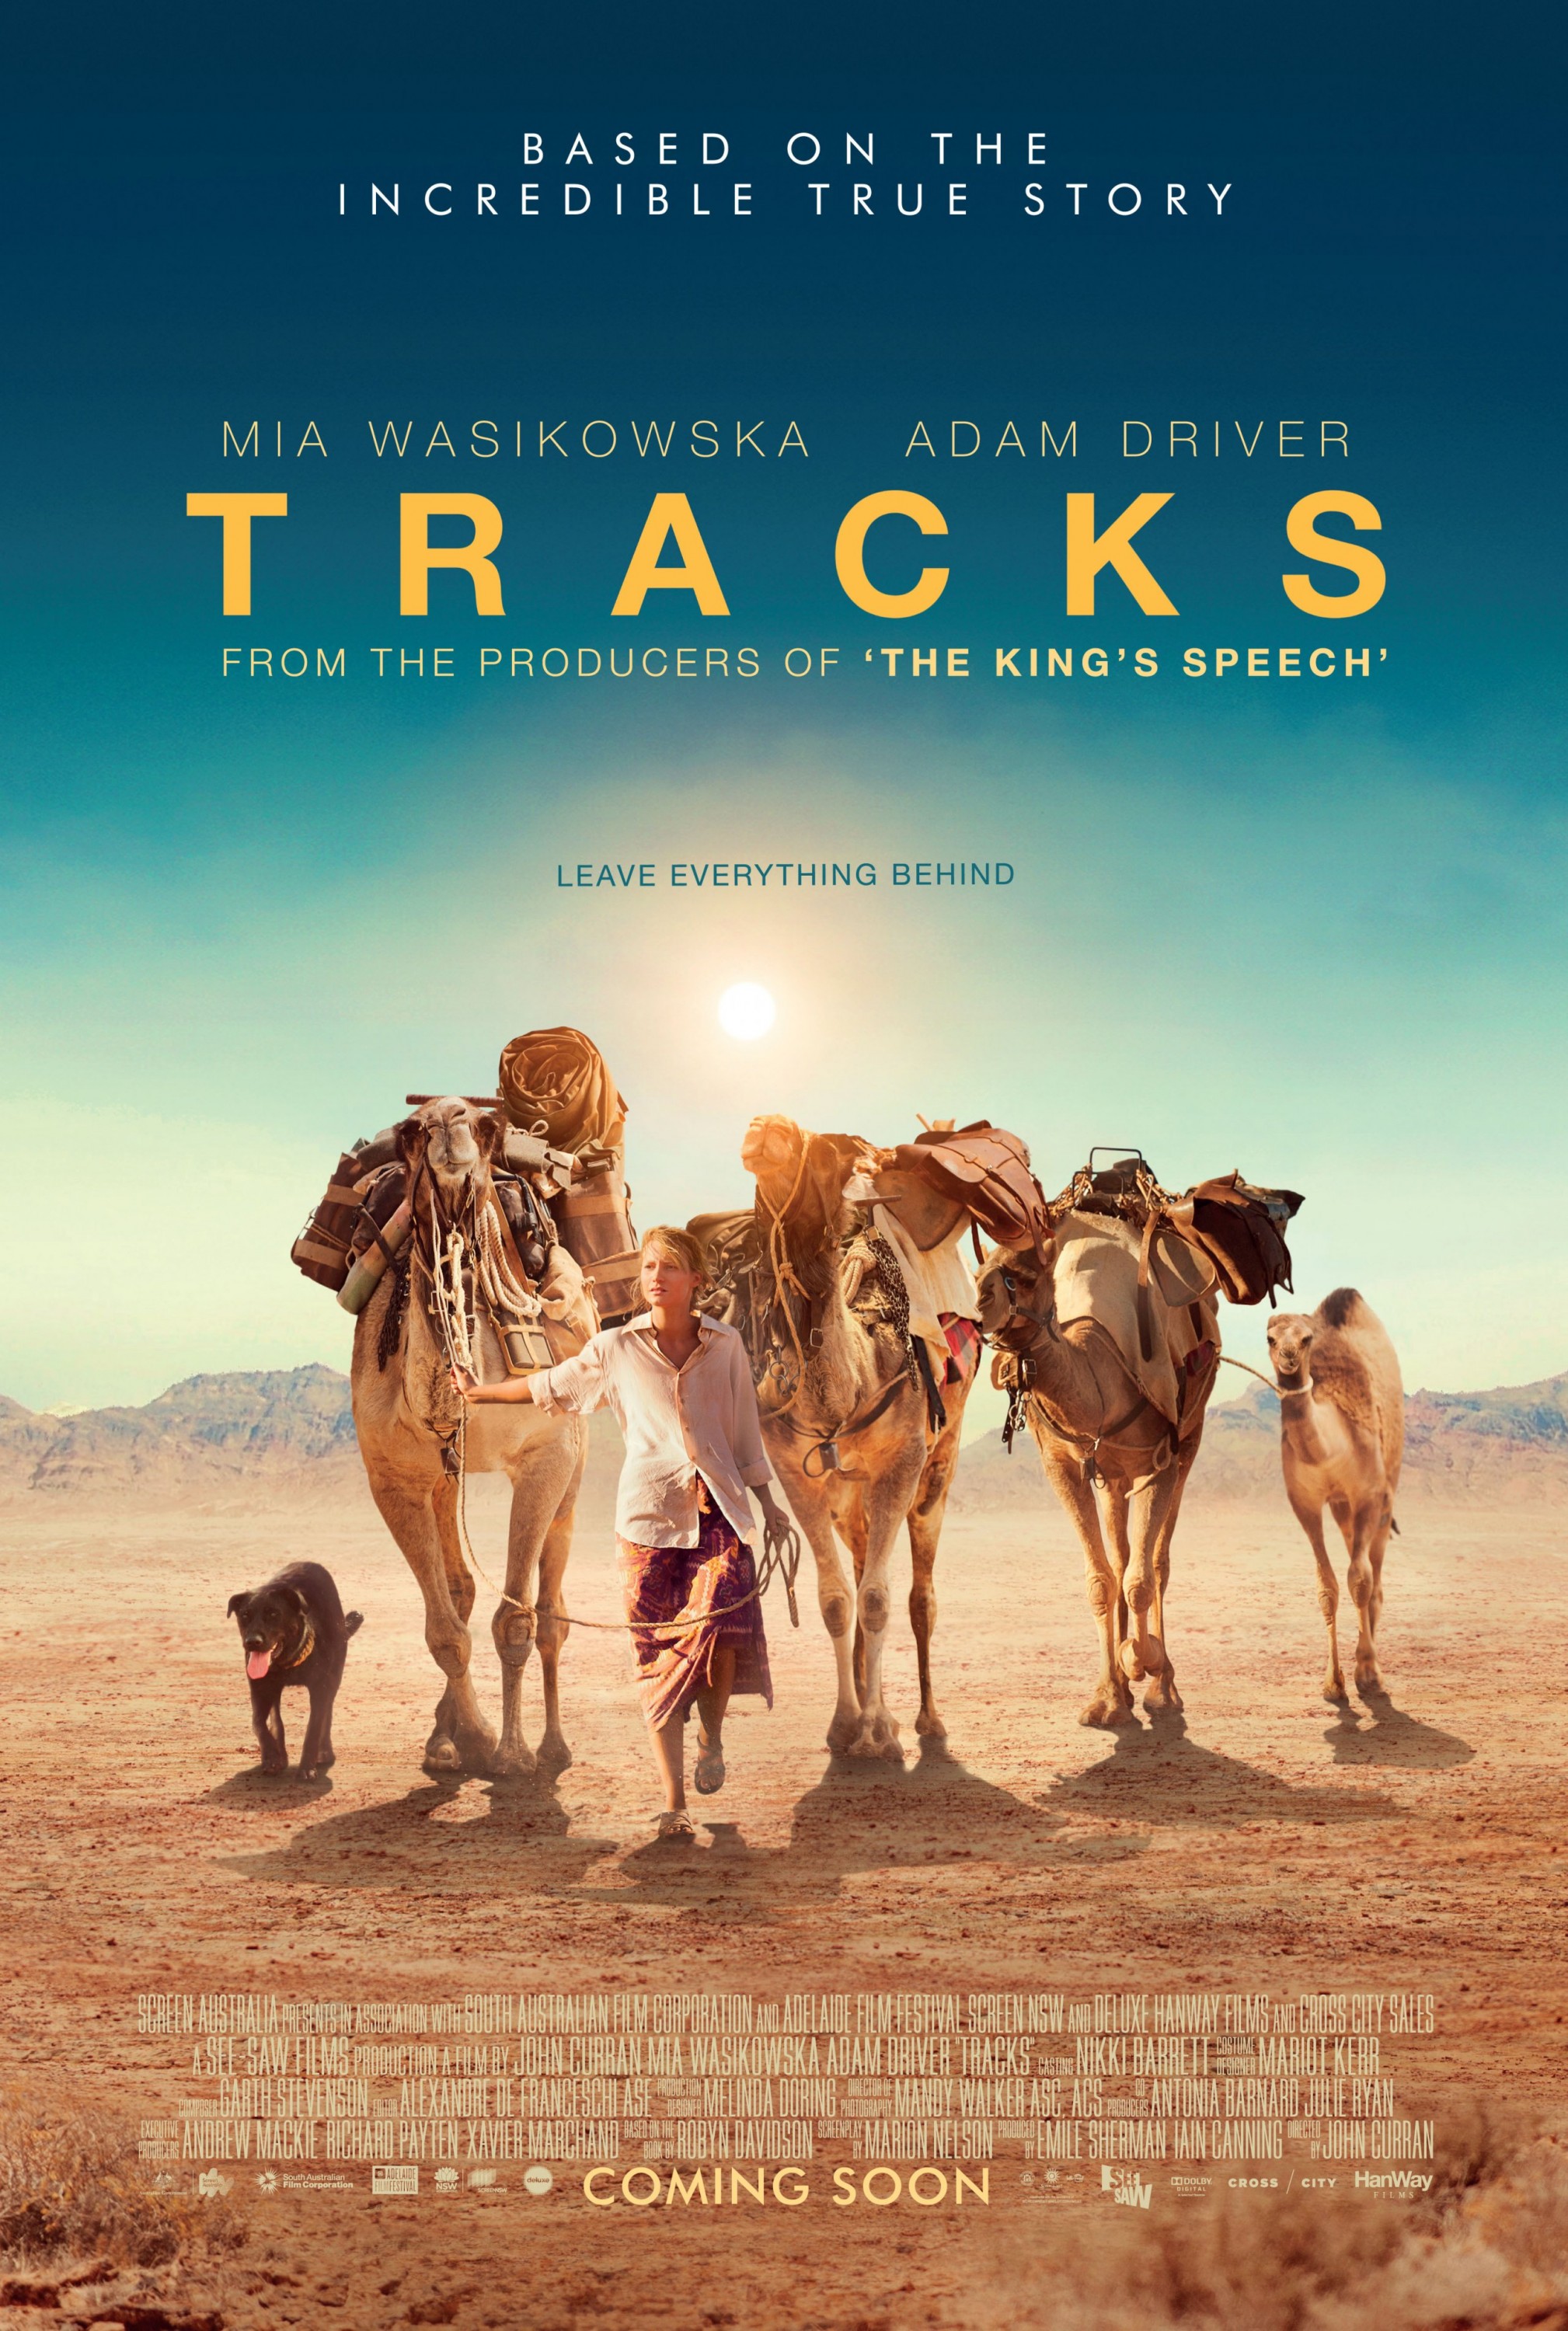 Movie Review: Tracks